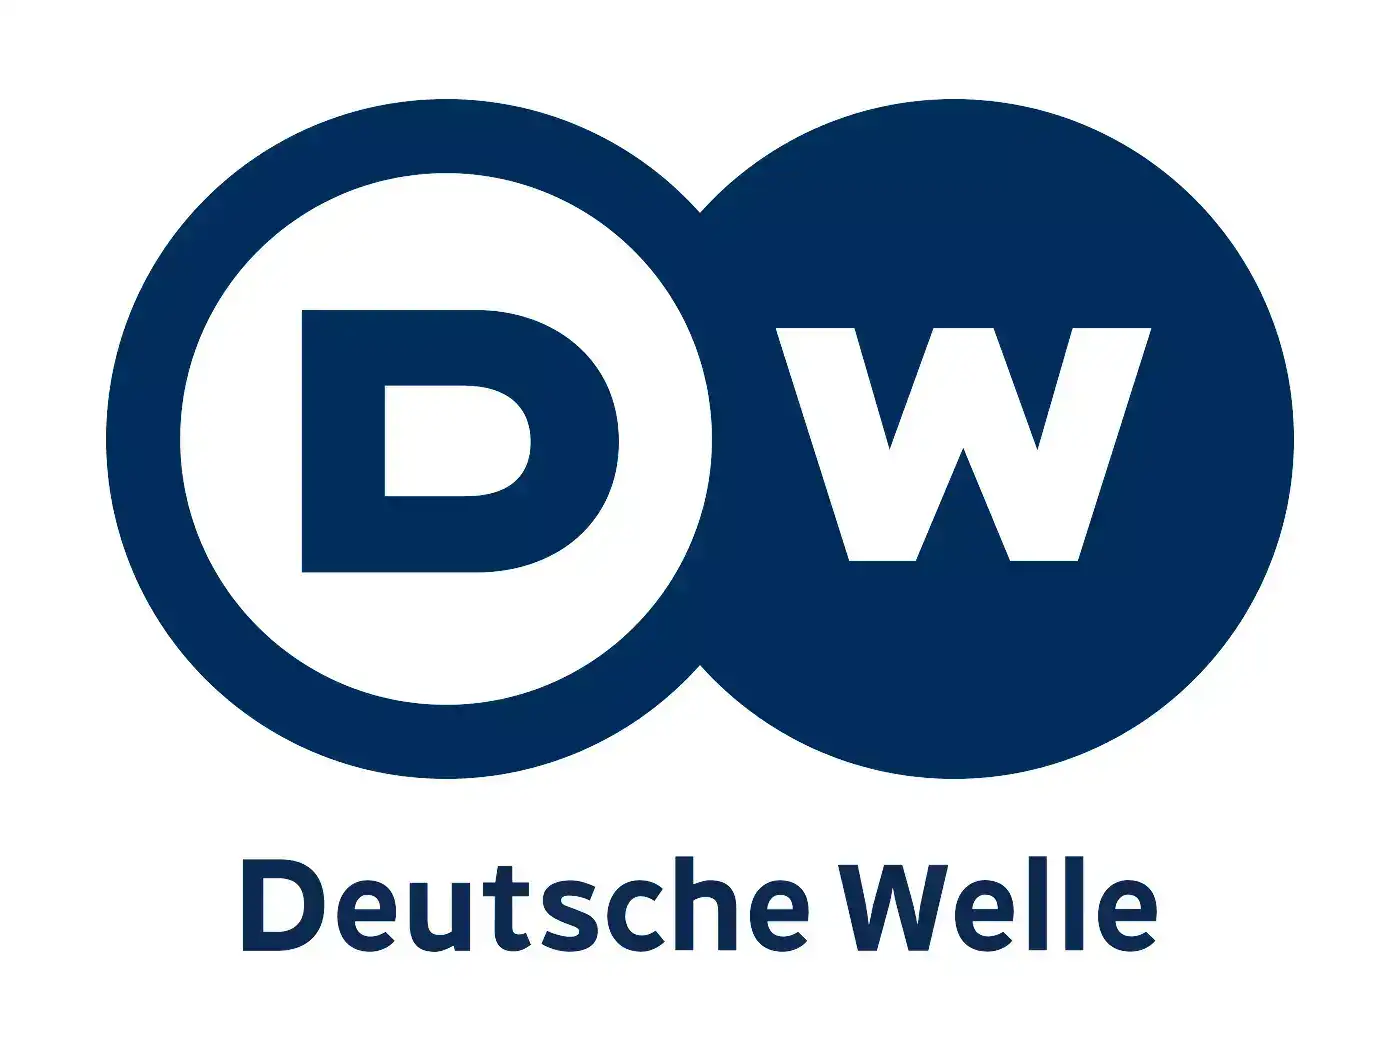 Дойче велле на русском ютуб. DW логотип. DW Телеканал. Deutsche Welle логотип. Дойче велле на русском.